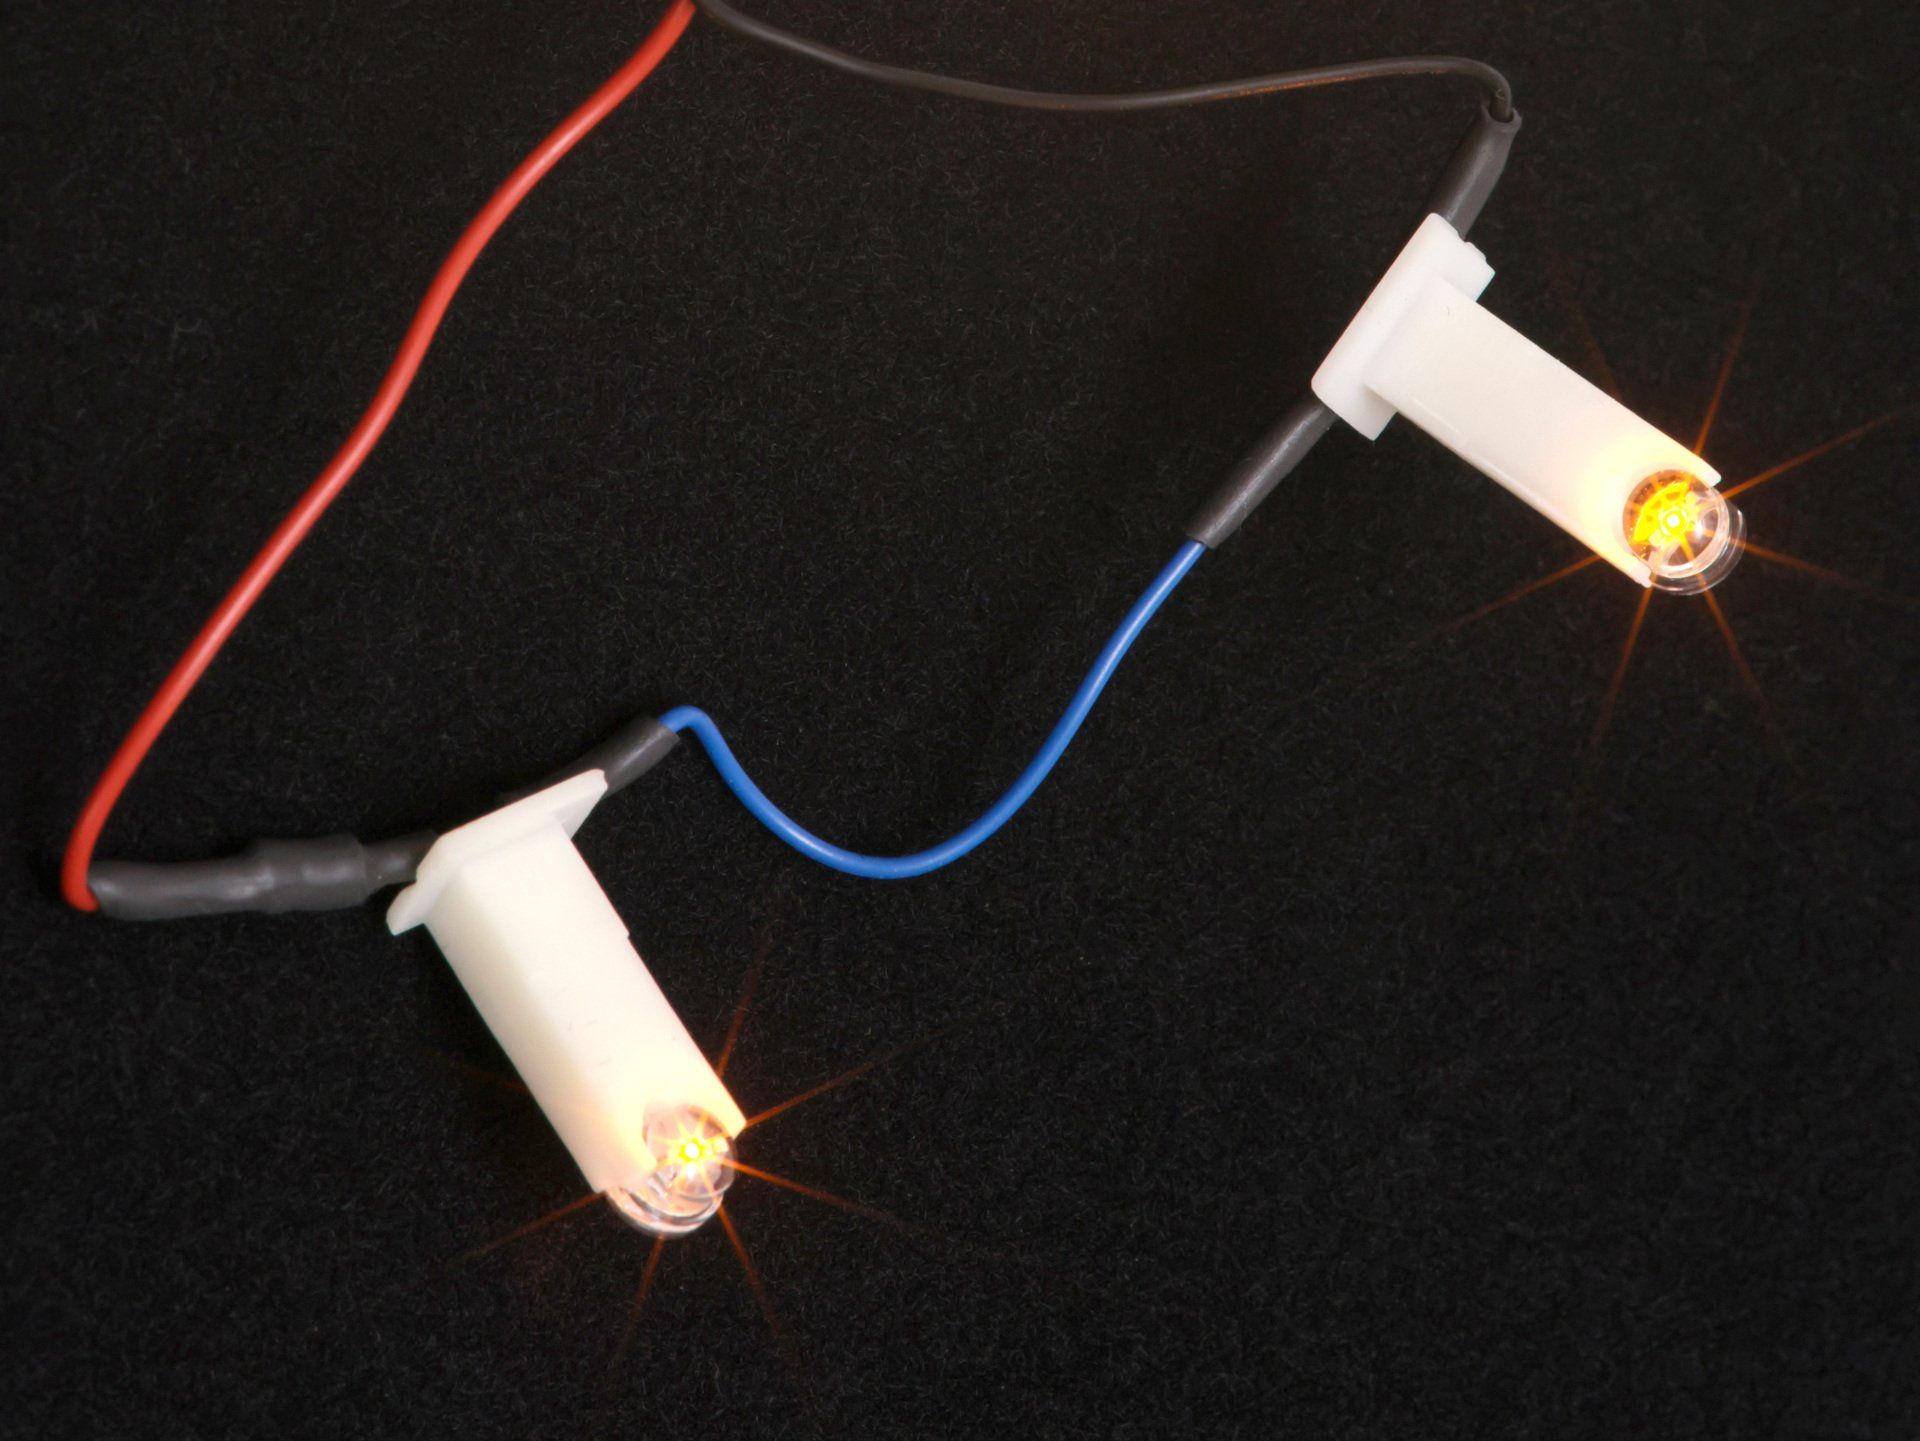 Reihenschaltung der LEDs spart Strom, revox-online